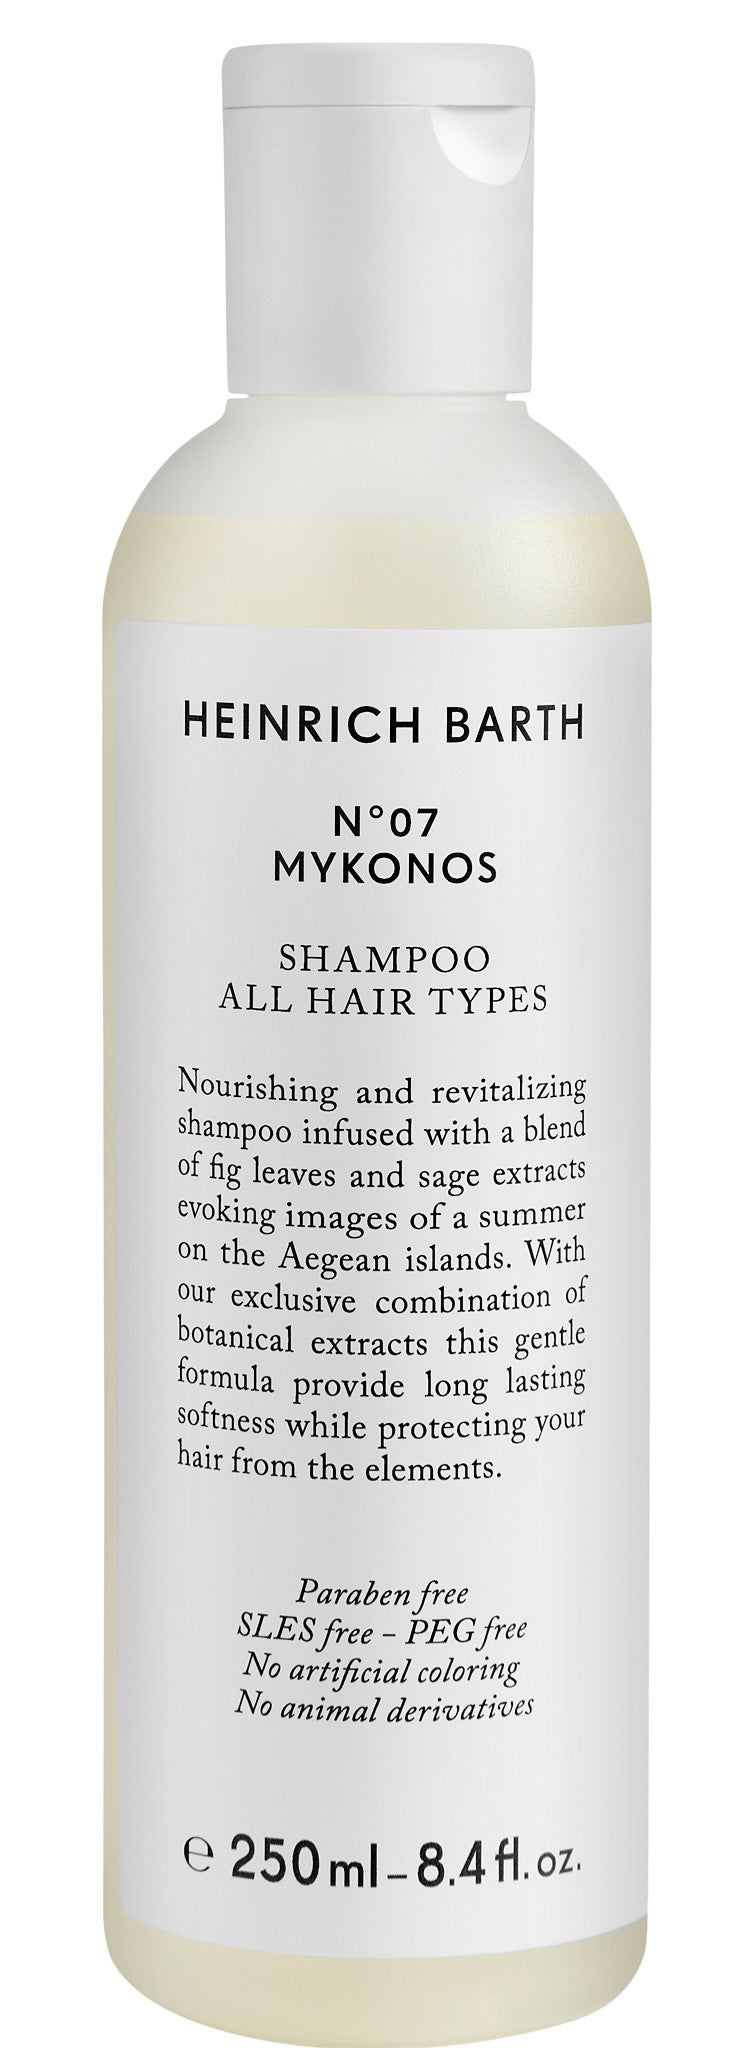 N°07 MYKONOS SHAMPOO ALL HAIR TYPES 250ml - 8.4 fl. oz.